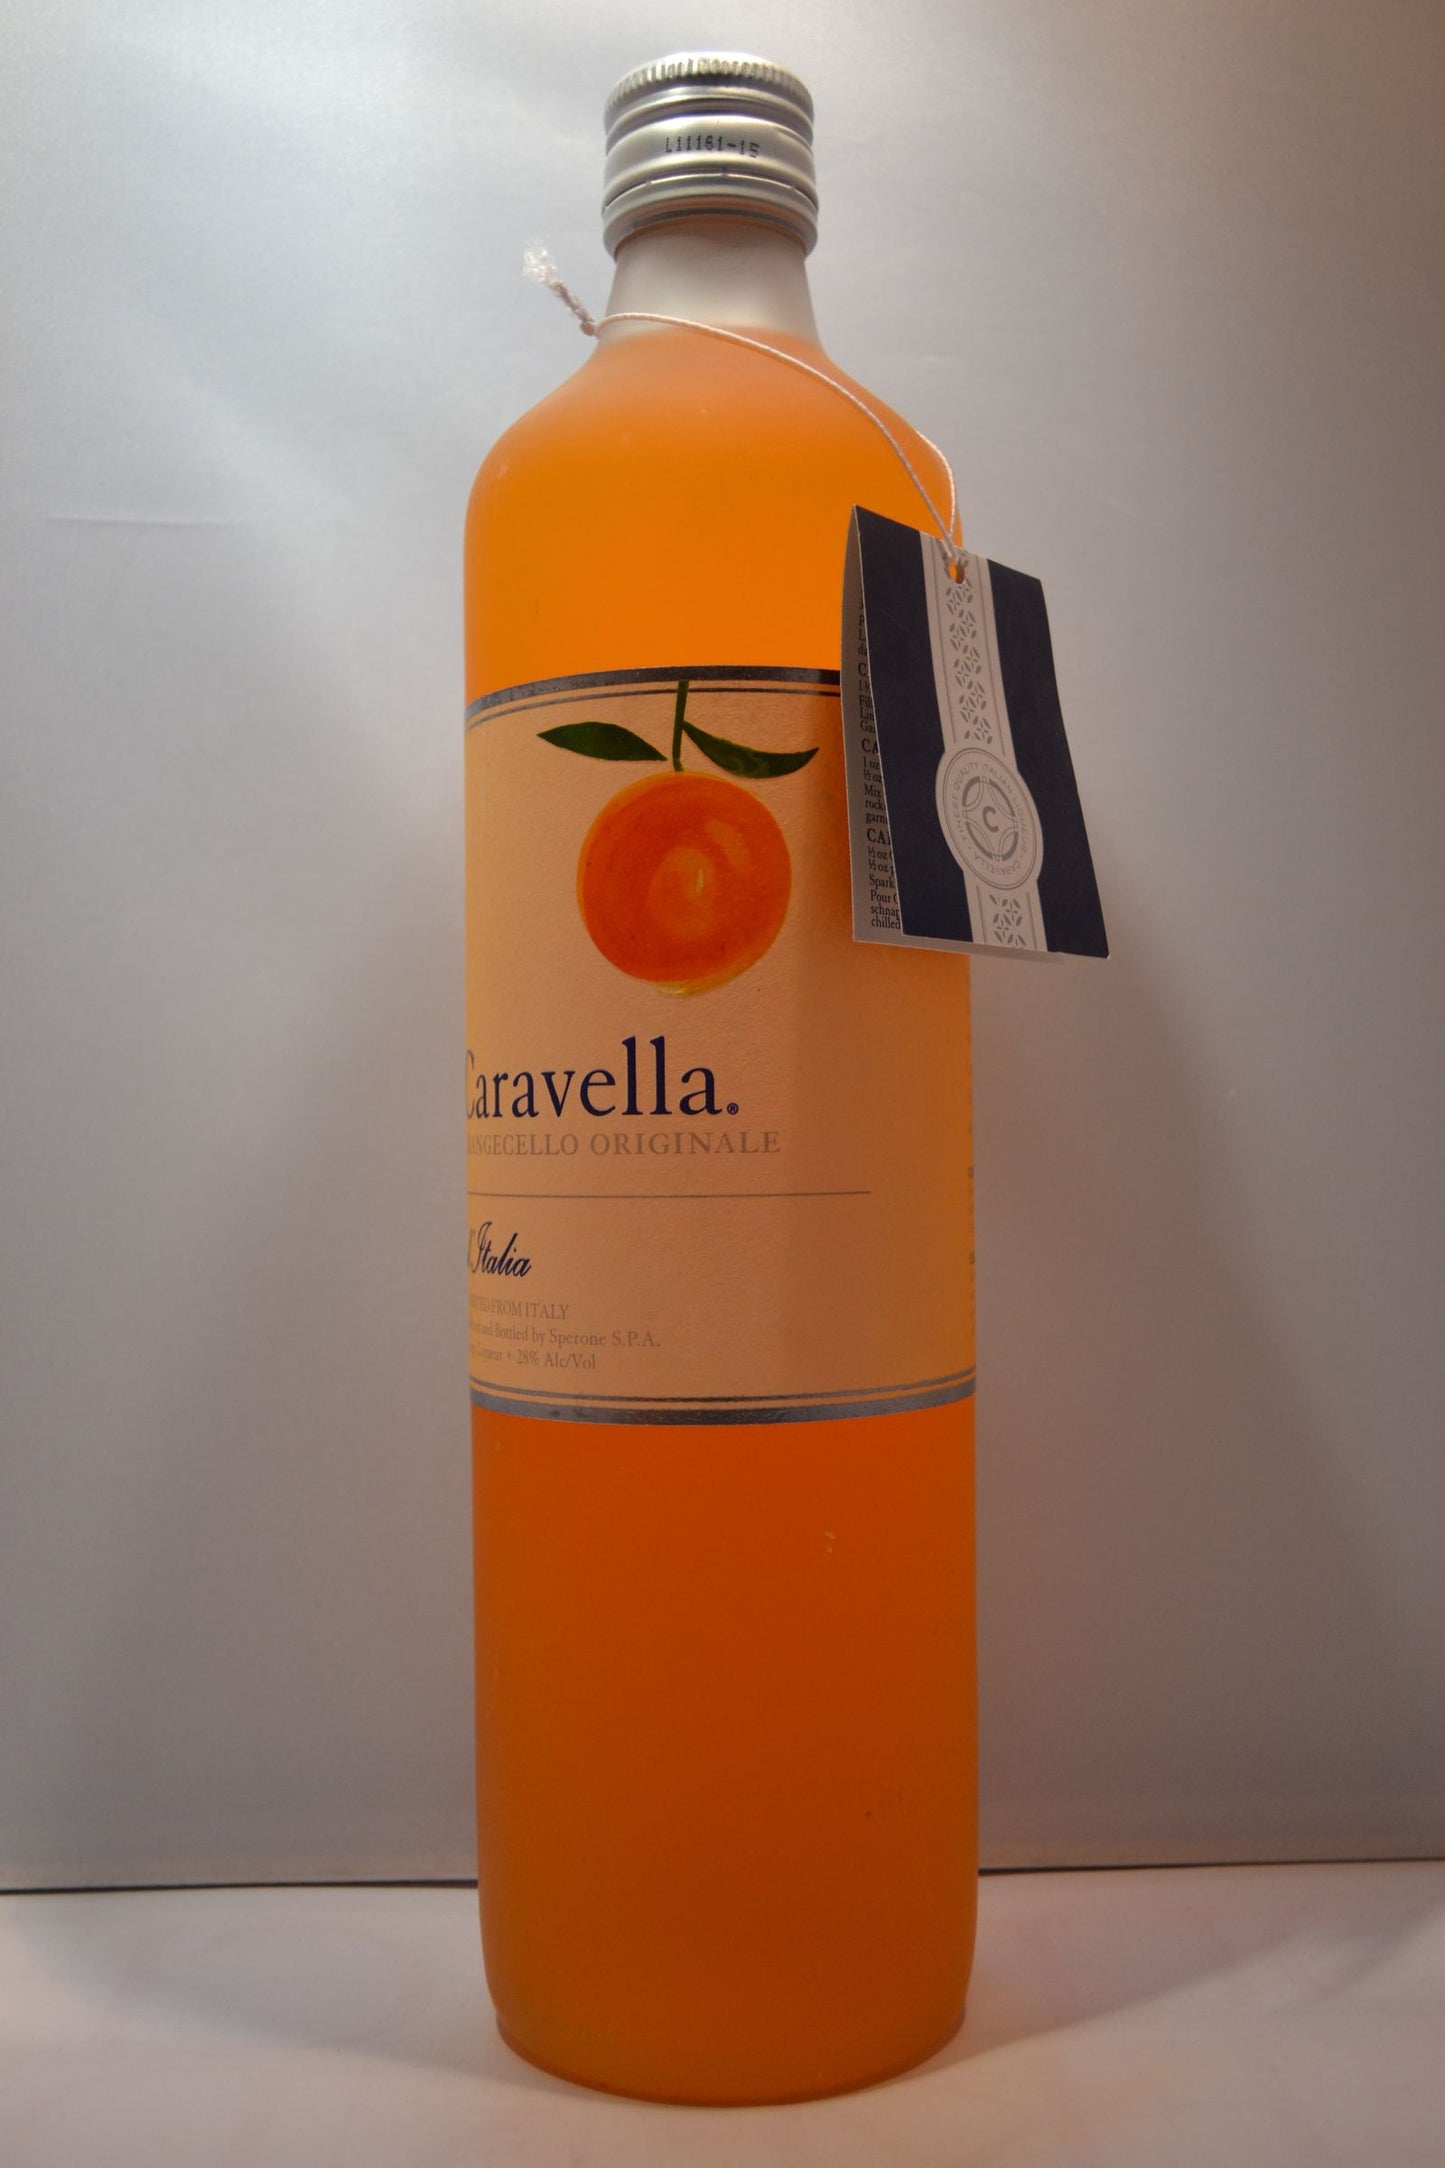 CARAVELLA ORANGECELLO 750ML - Remedy Liquor